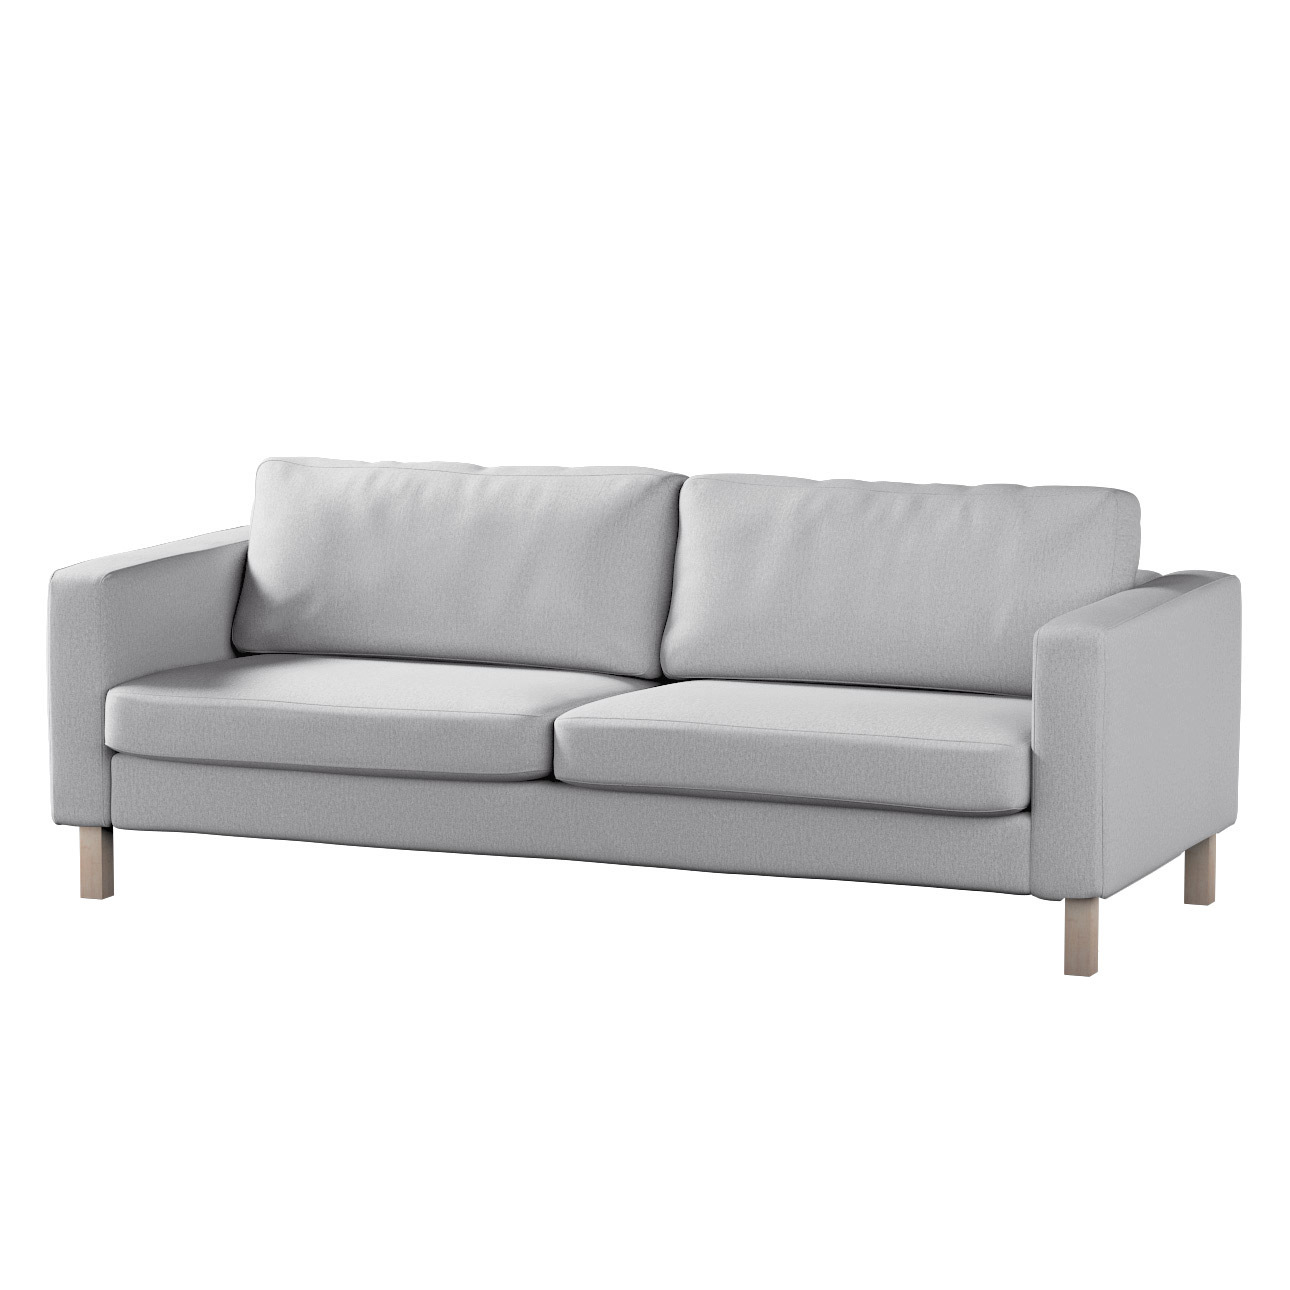 Bezug für Karlstad 3-Sitzer Sofa nicht ausklappbar, kurz, szary, Bezug für günstig online kaufen